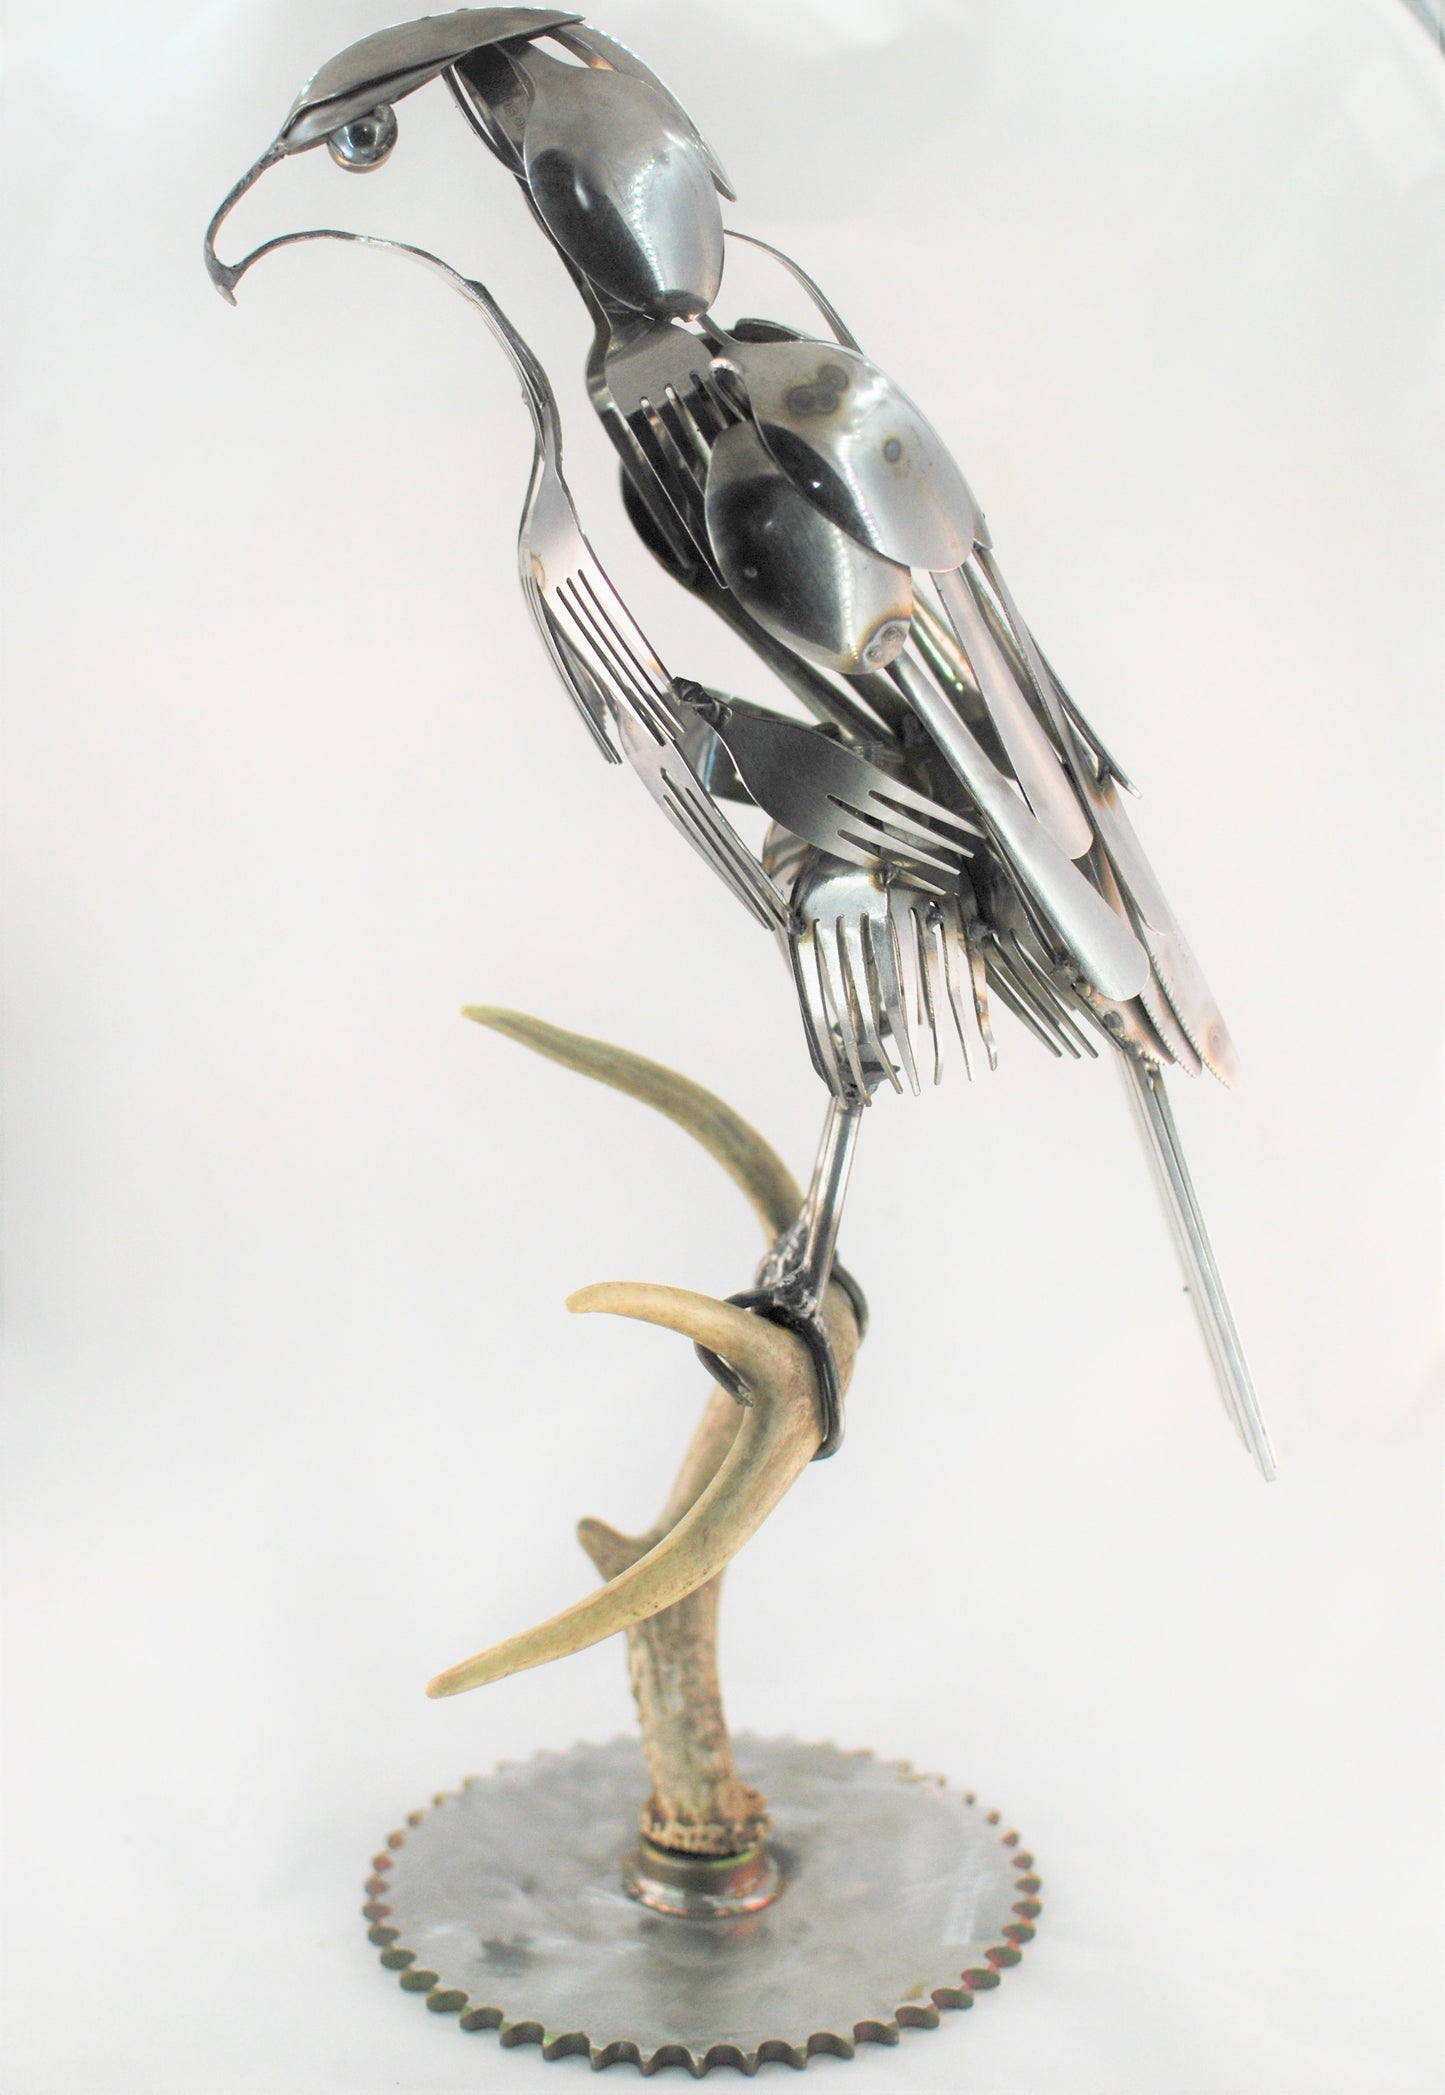 Frightful Sculpture, Spoon Bird, Silverware Art, Metal Bird Sculpture, Bird Art, Gift for Bird Lover, Wall Art, Bird Art